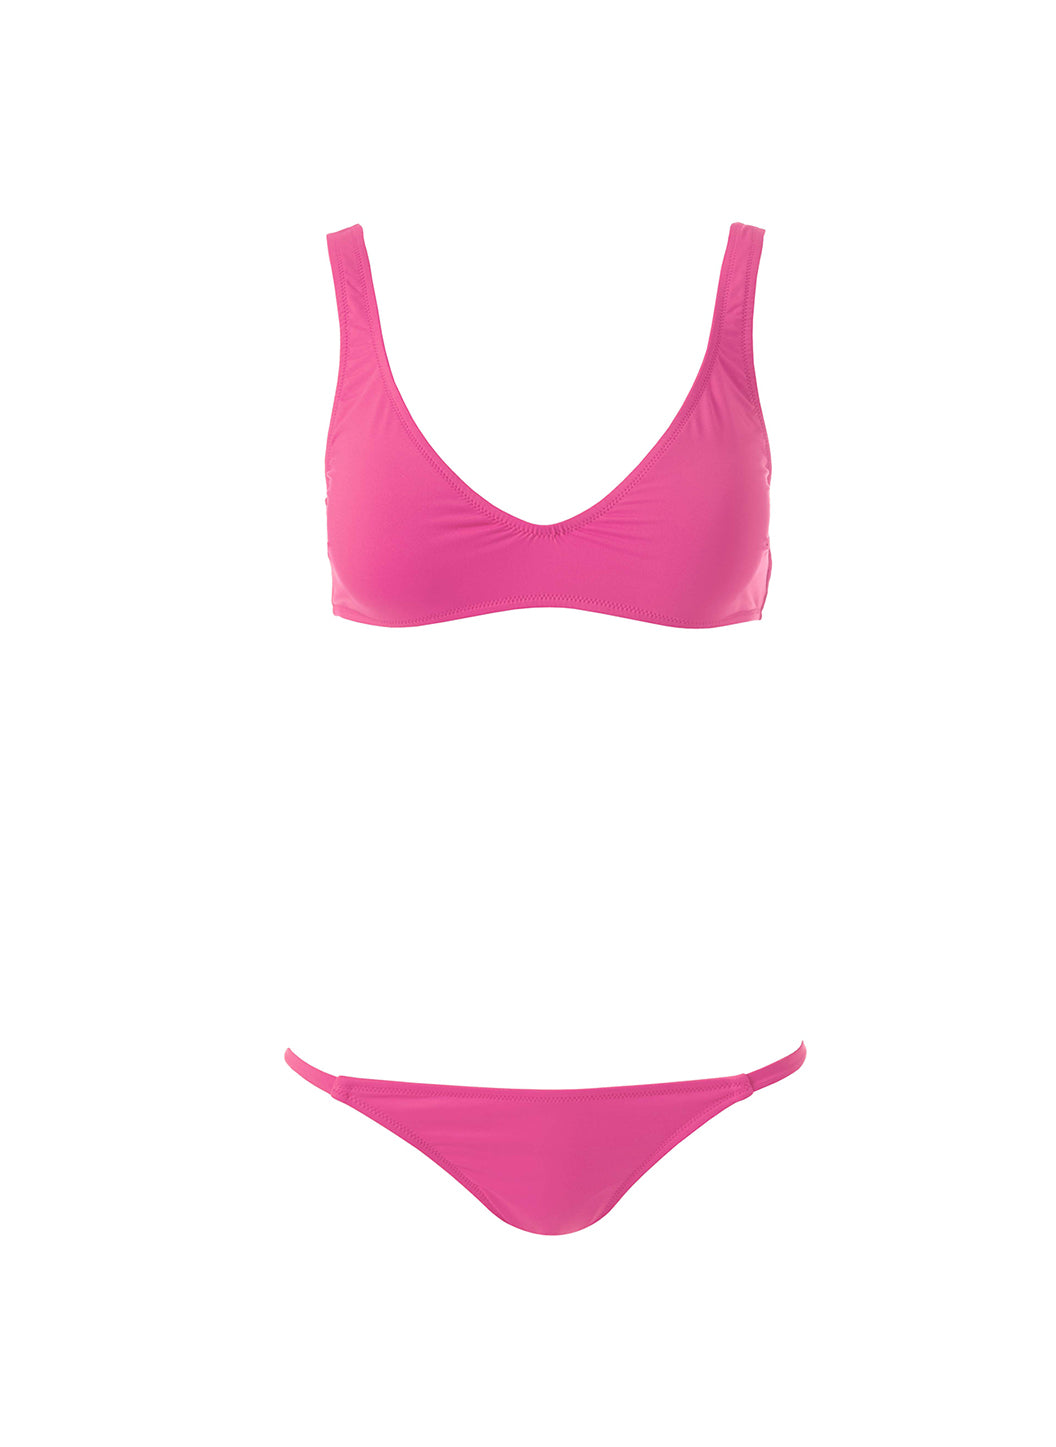 Monaco-Hot-Pink-Bikini_Cutouts_1f34484d-574e-446c-853b-f431b6ba4ea3